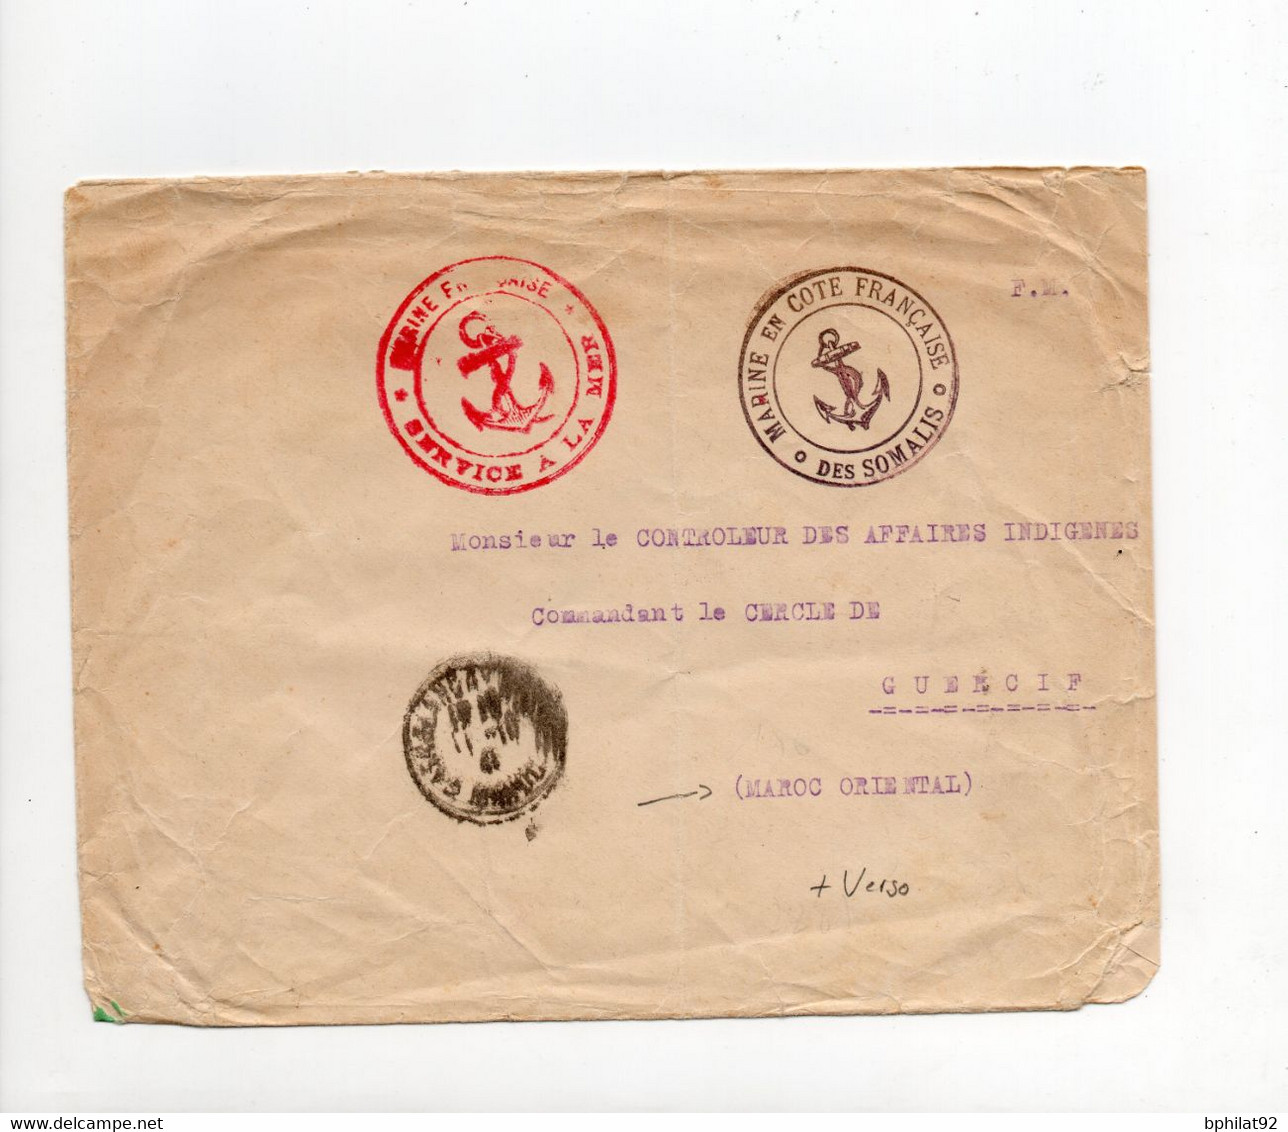 !!! LETTRE EN FRANCHISE DE 1940, CACHET MARINE EN COTE DES SOMALIS FRANCAISE, POUR LE MAROC - Covers & Documents